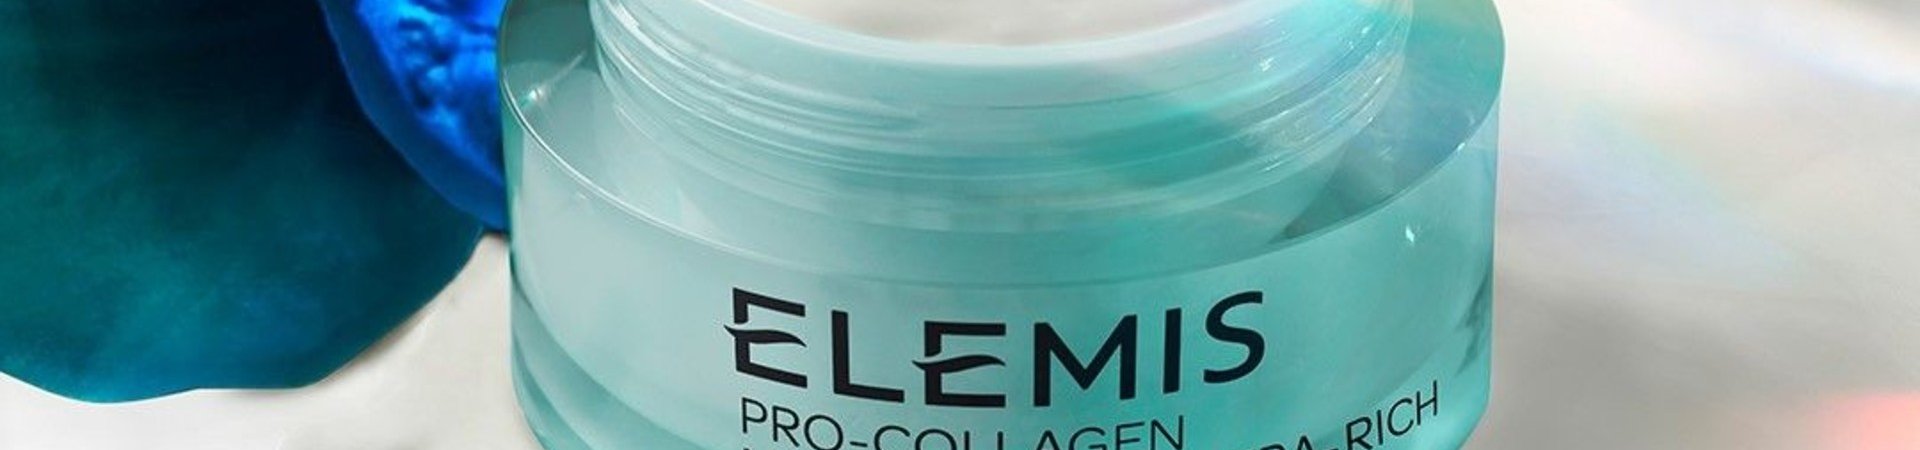 Vsakih 9 sekund se nekje na svetu proda 1 Pro-Collagen Marine krema!